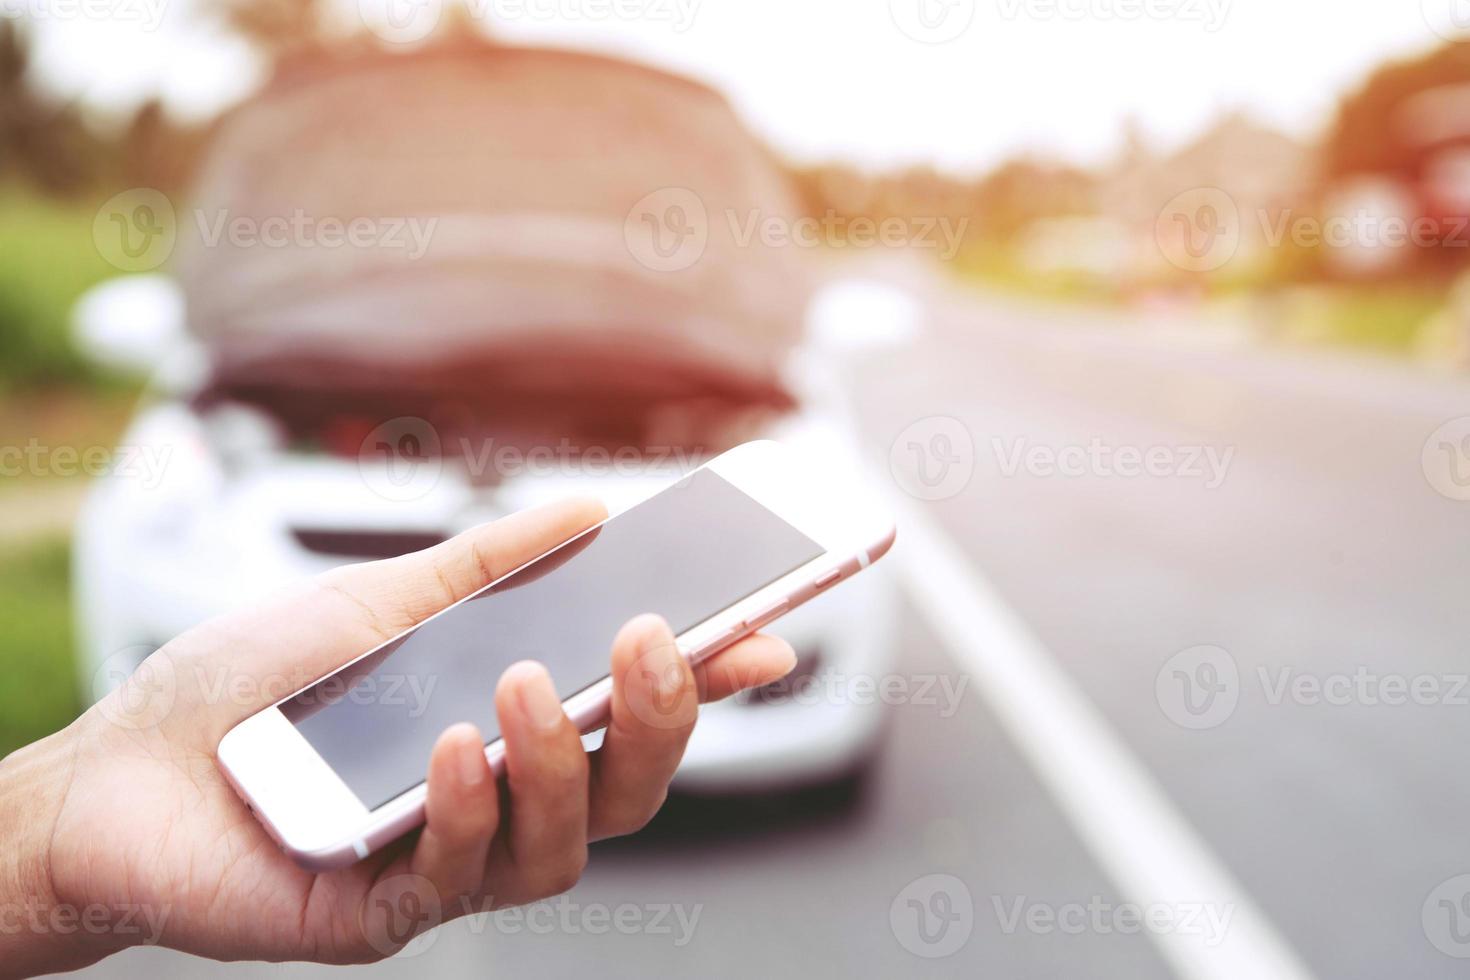 close-up vrouwelijke hand met behulp van een mobiele smartphone oproep een automonteur om hulp vragen omdat de auto kapot is langs de weg. leeg of leeg scherm. foto